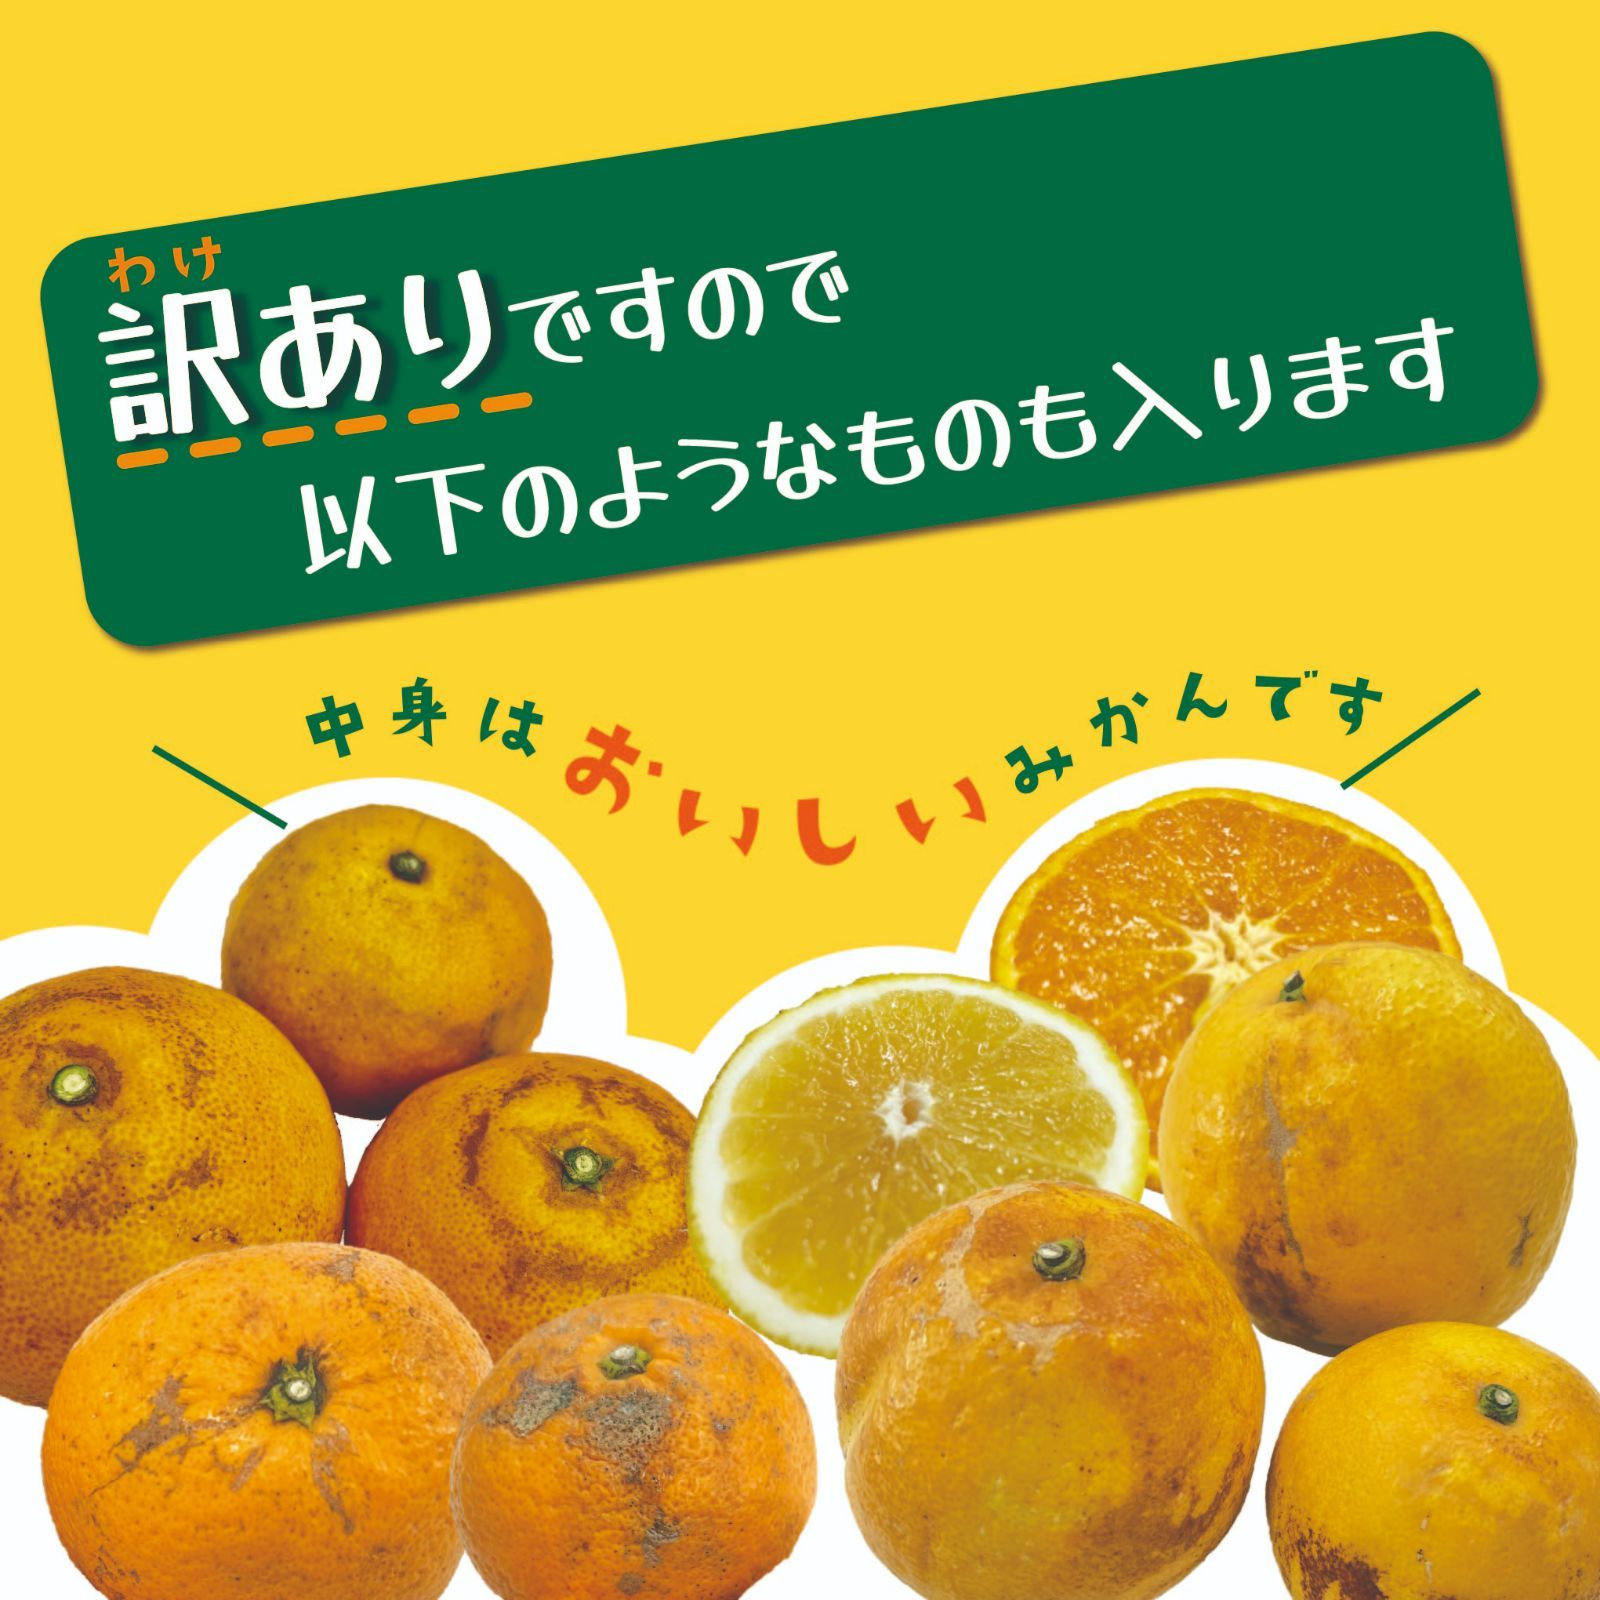 【超お買い得!】旬の柑橘 詰め合わせ 10kg補償有-2